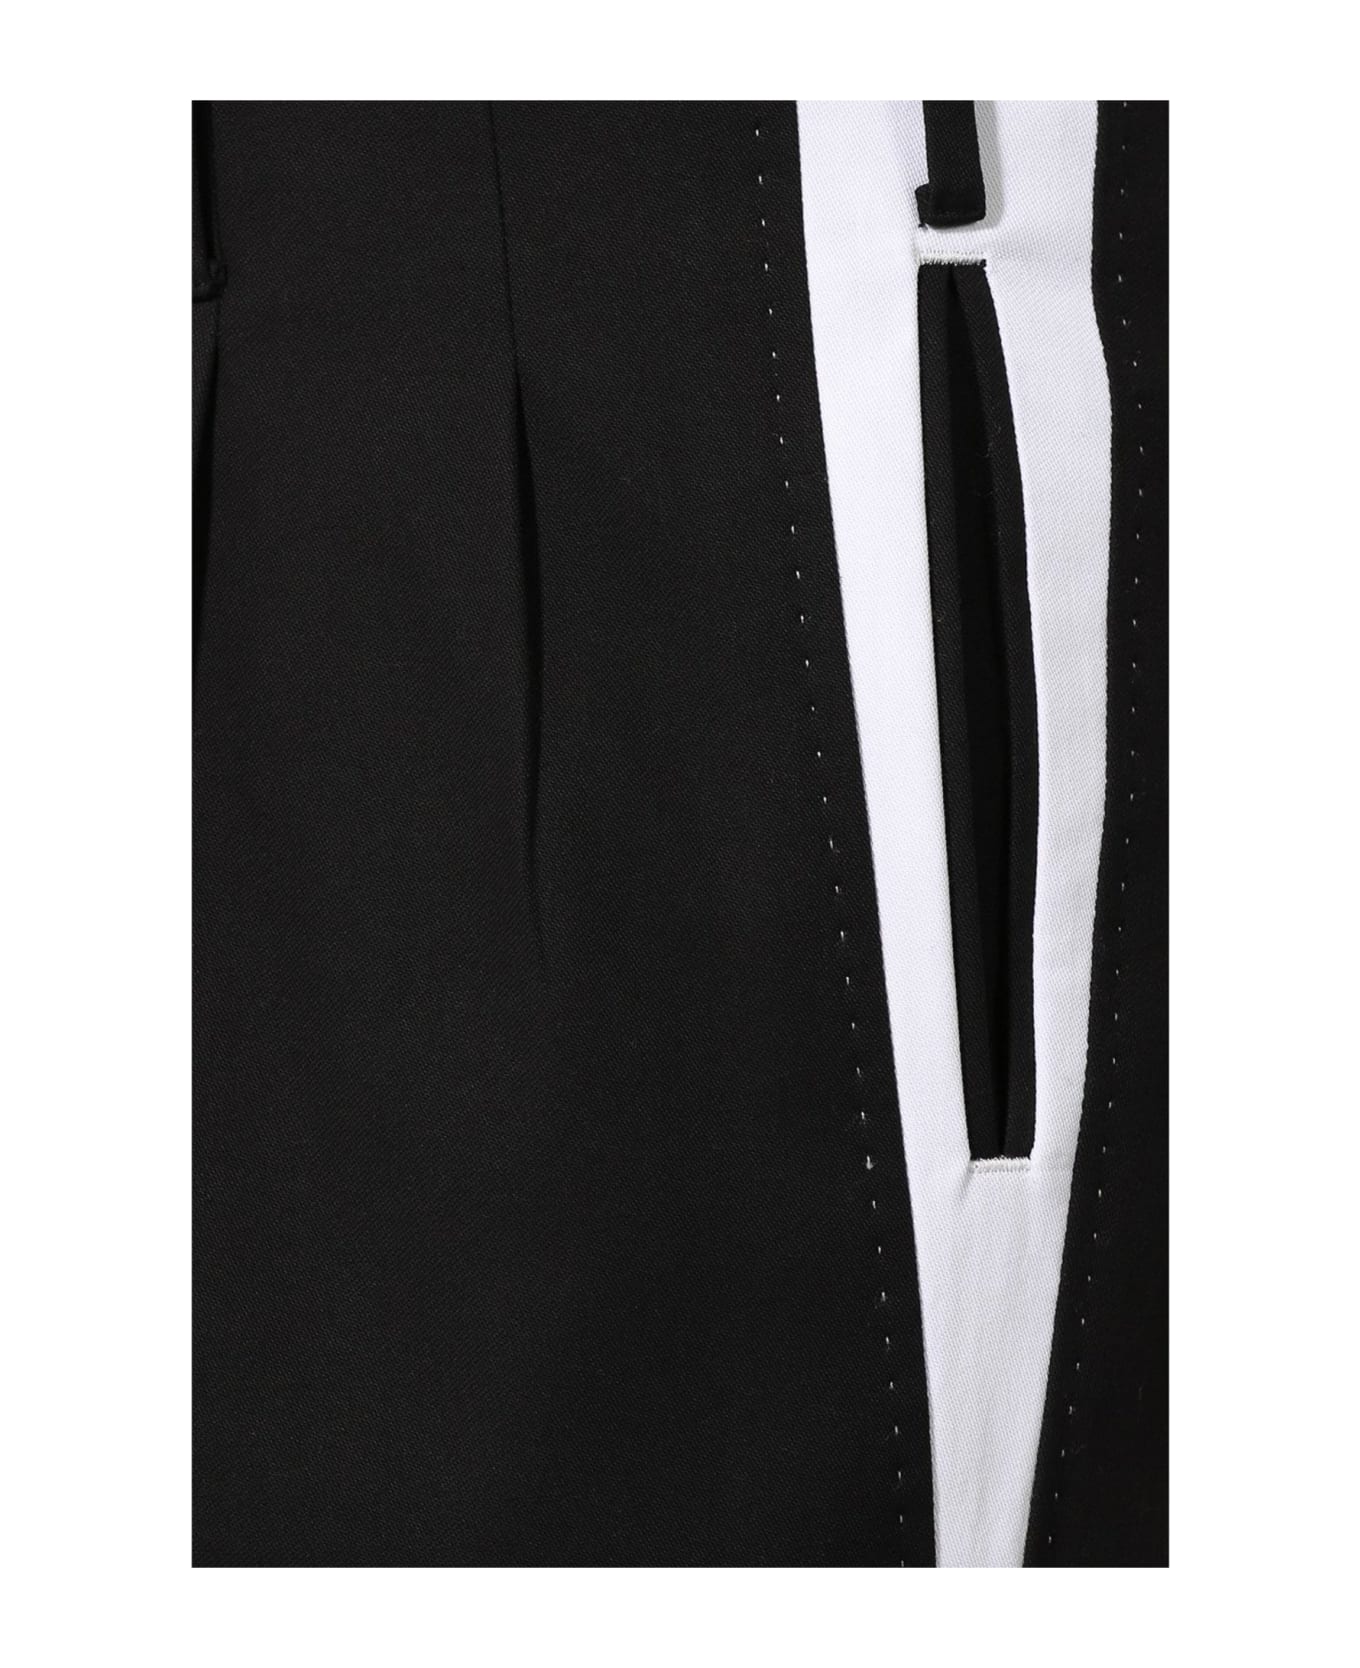 Dolce & Gabbana Side Stripe Pleat Trousers - Black ボトムス